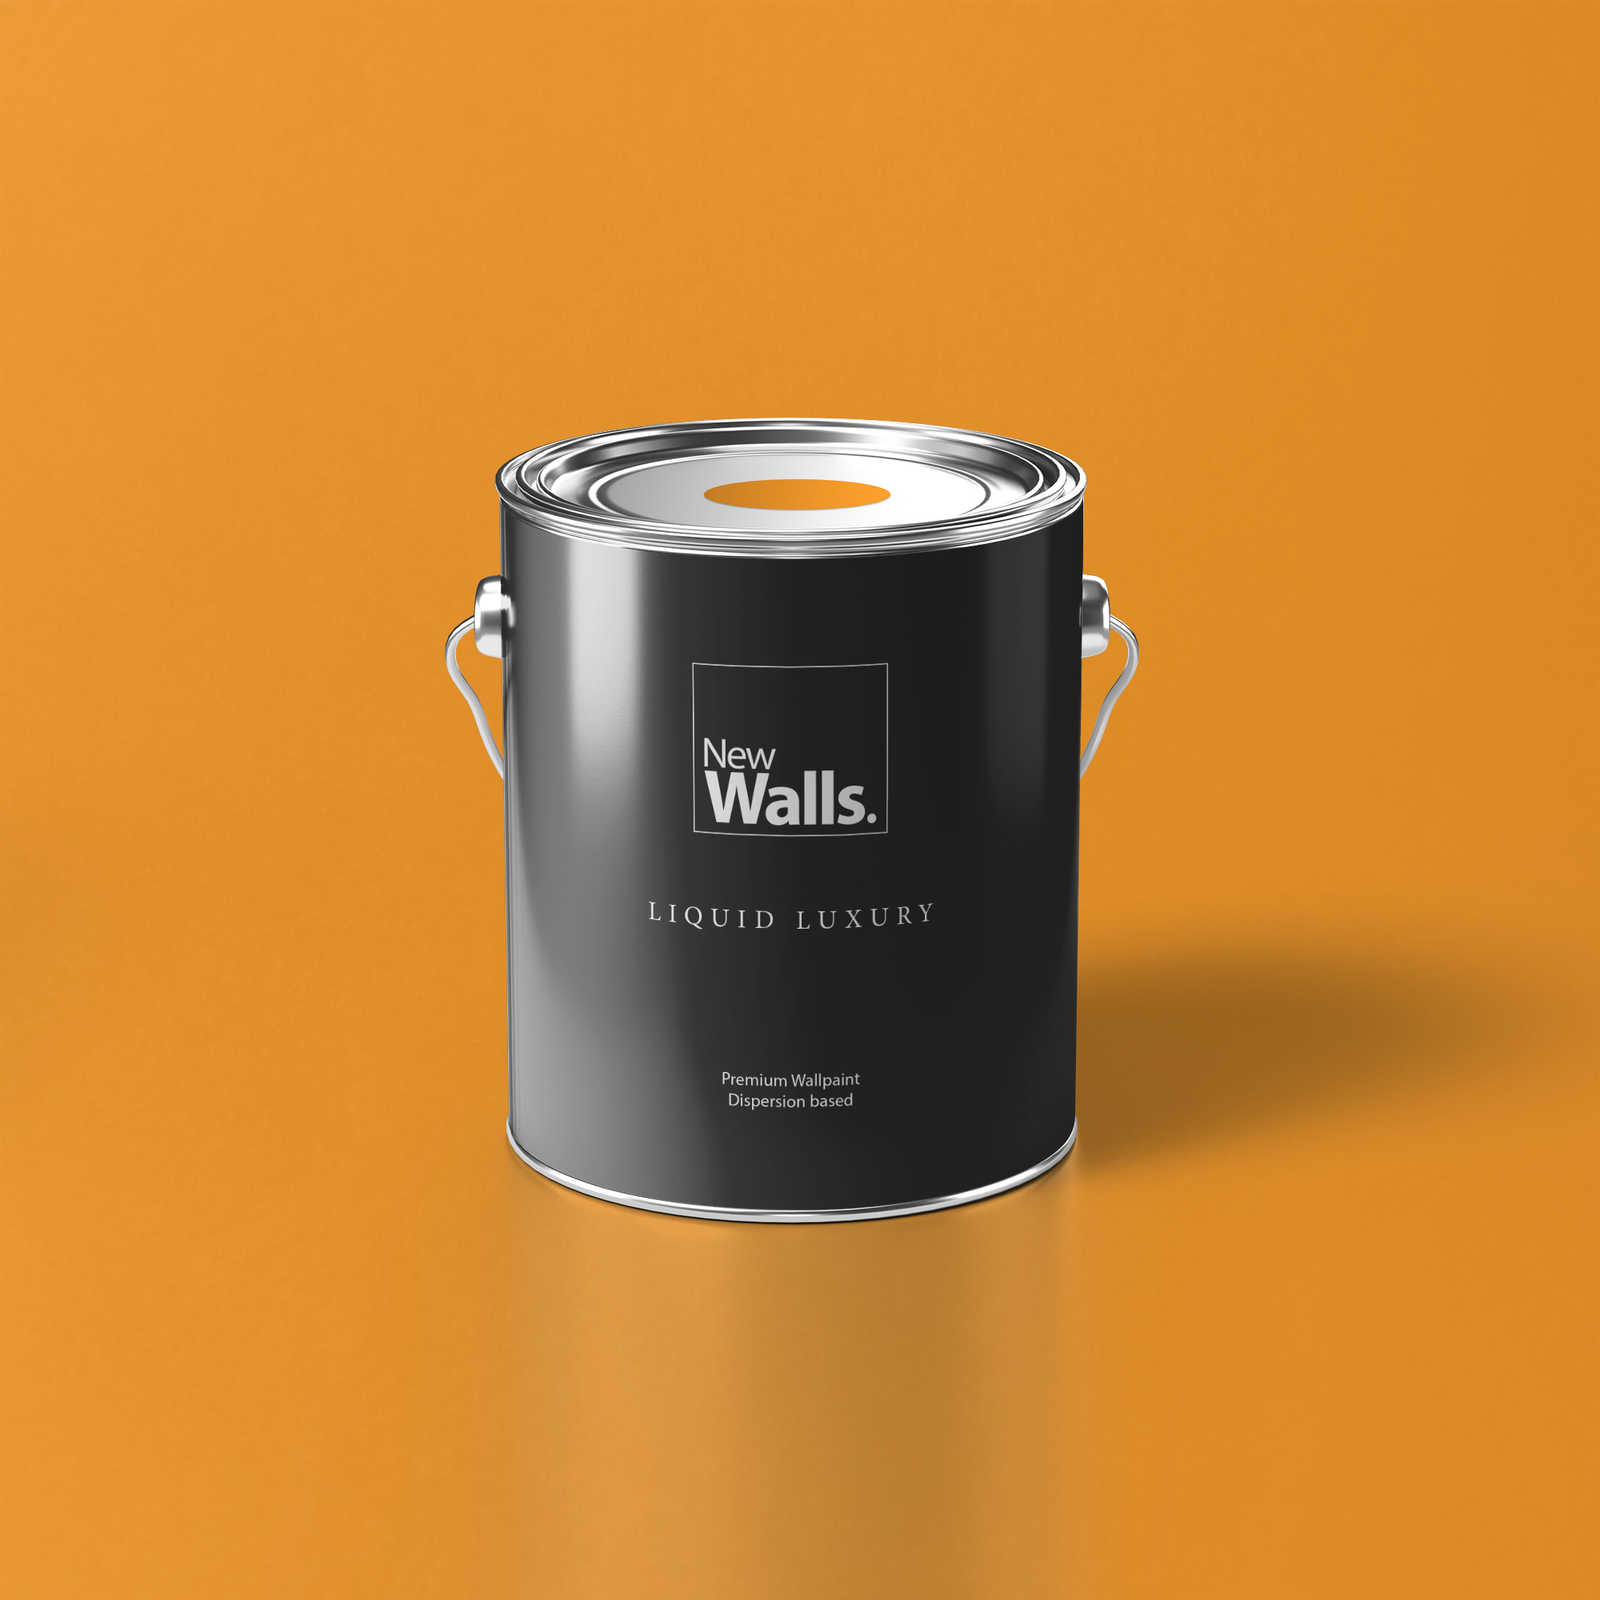 Premium Wall Paint Cheerful Honey Yellow »Juicy Yellow« NW807 – 5 litre
